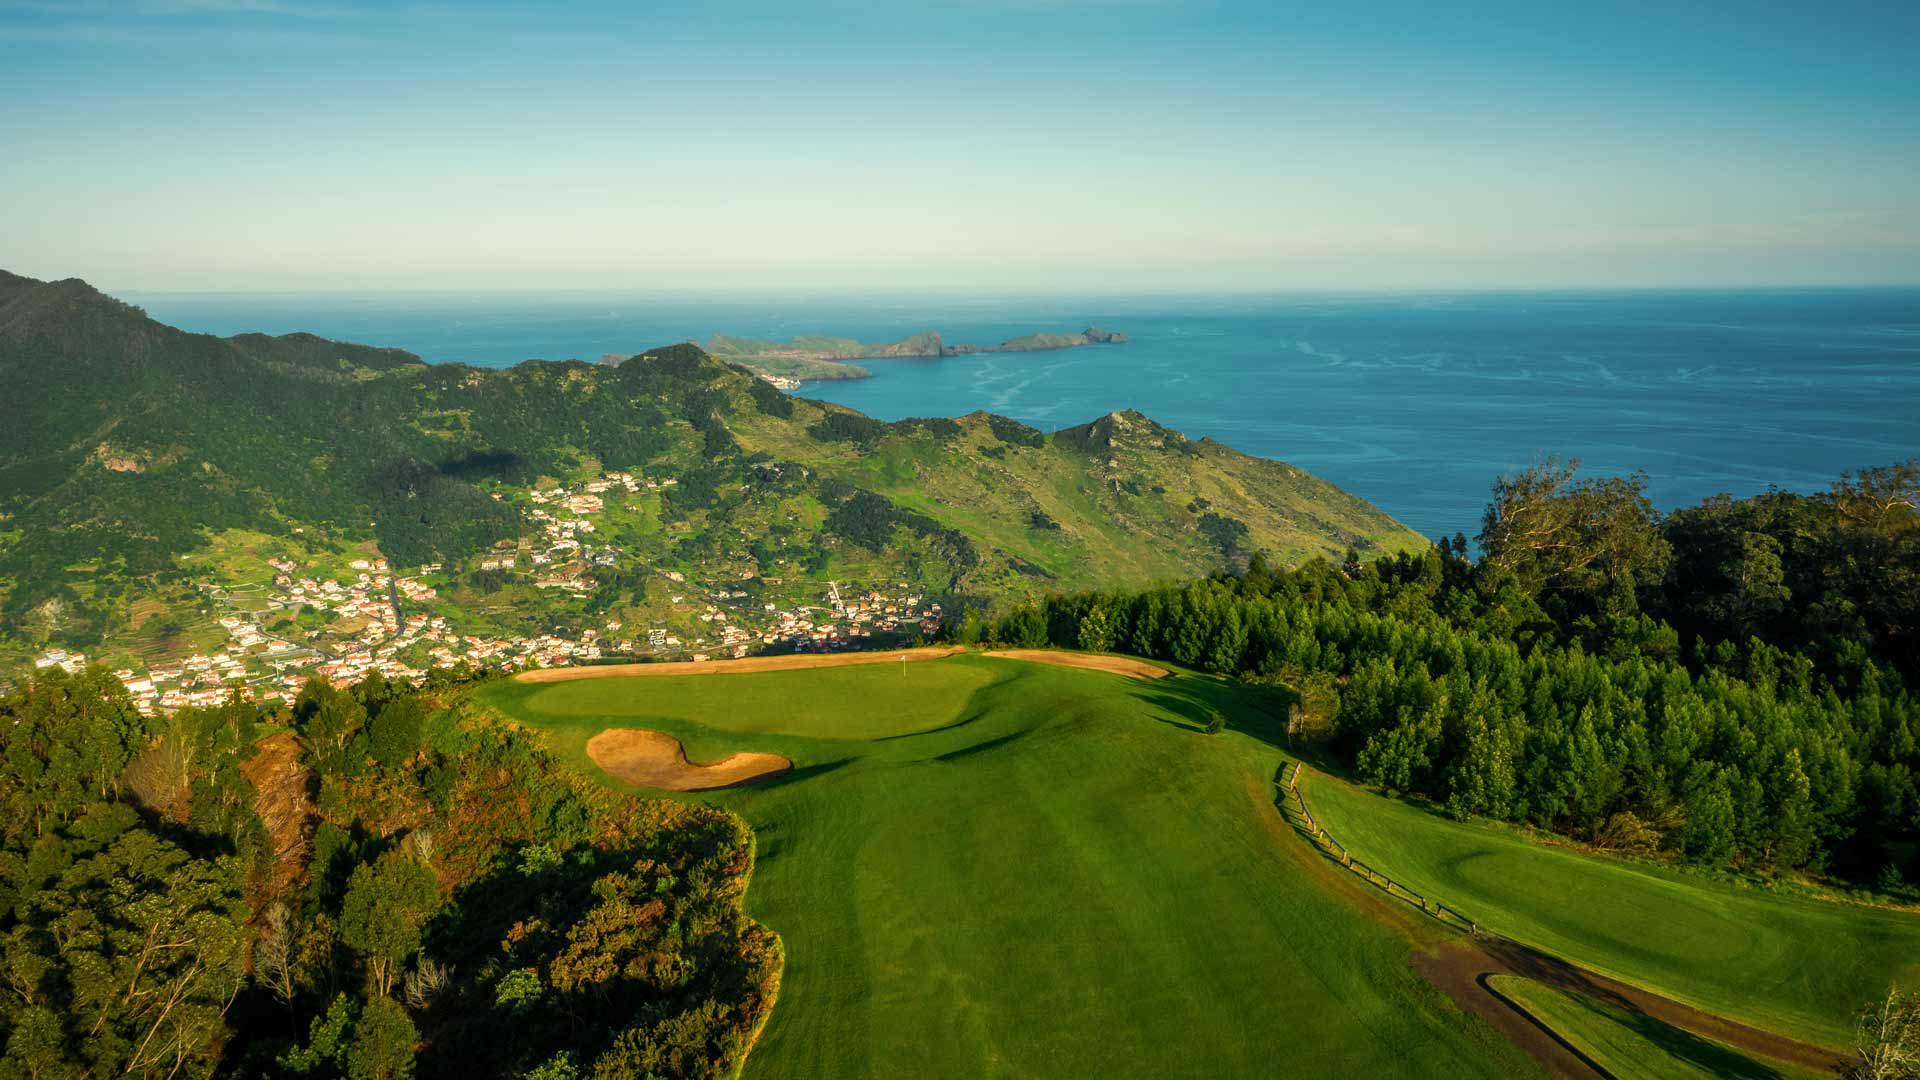 heroin Grønland kandidatskole Golf - Visit Madeira | Madeira Islands Tourism Board official website